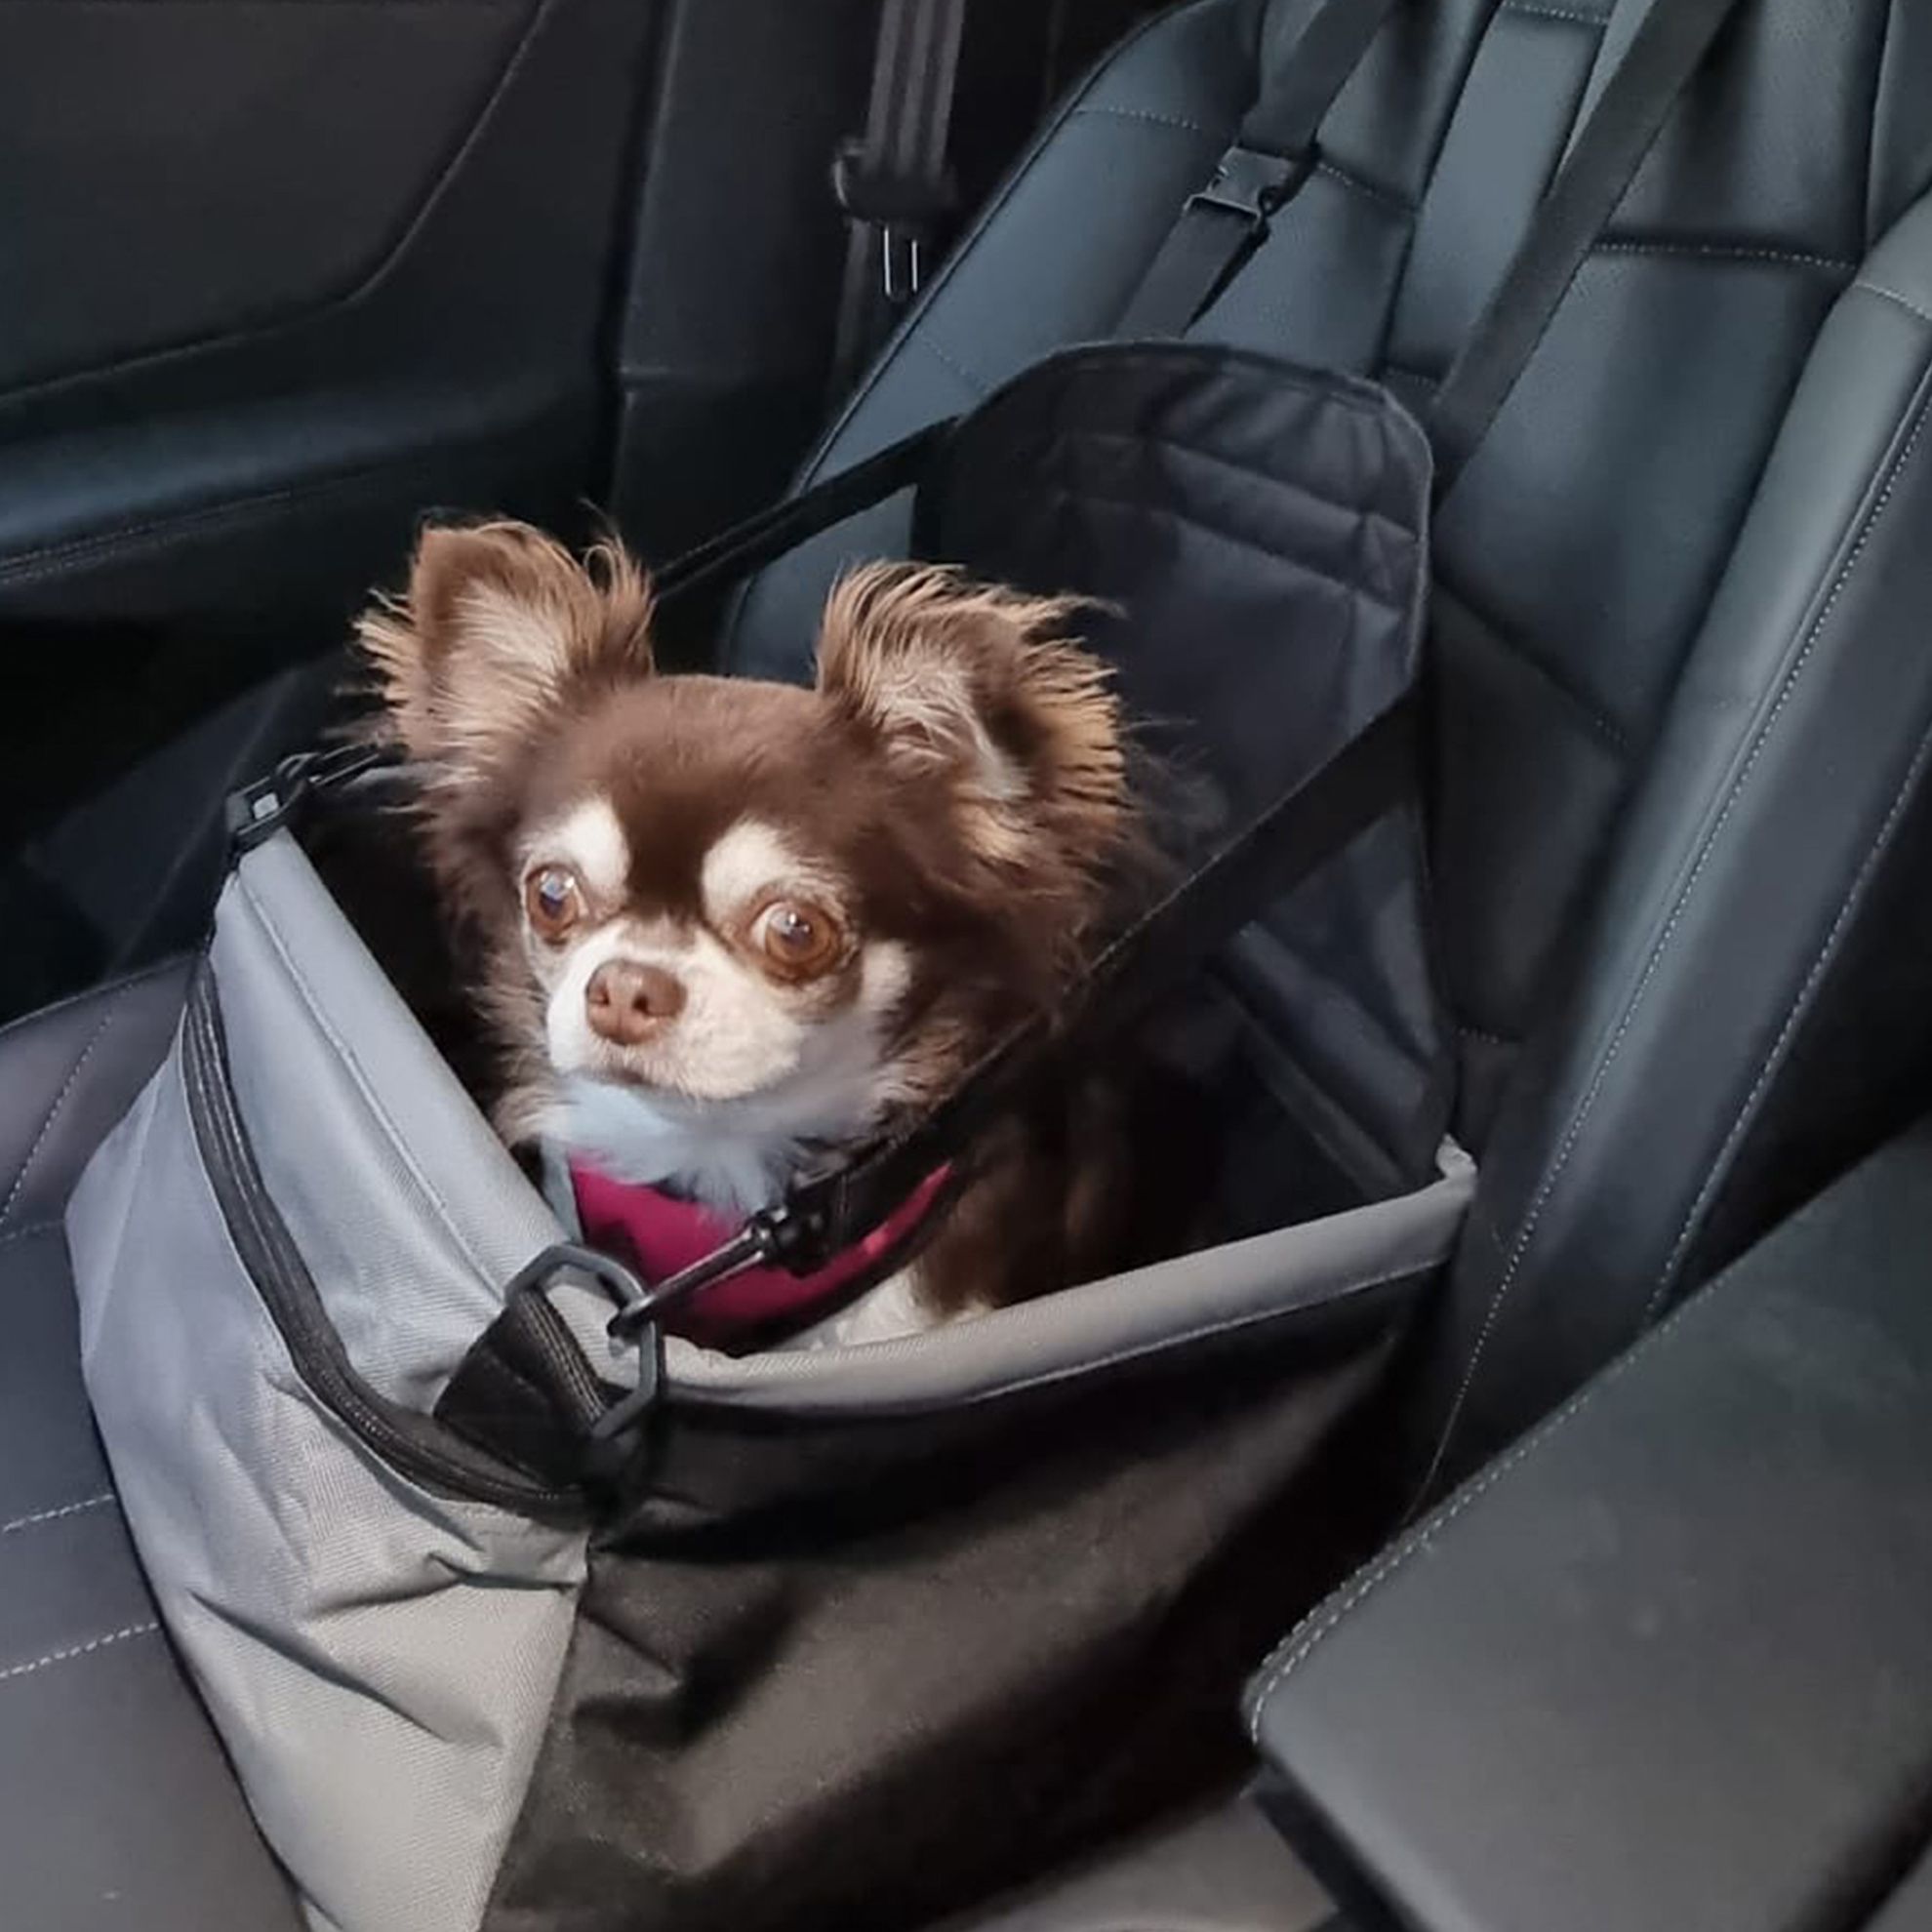 Siège Auto Pour Chien - Panier pour chien en voiture